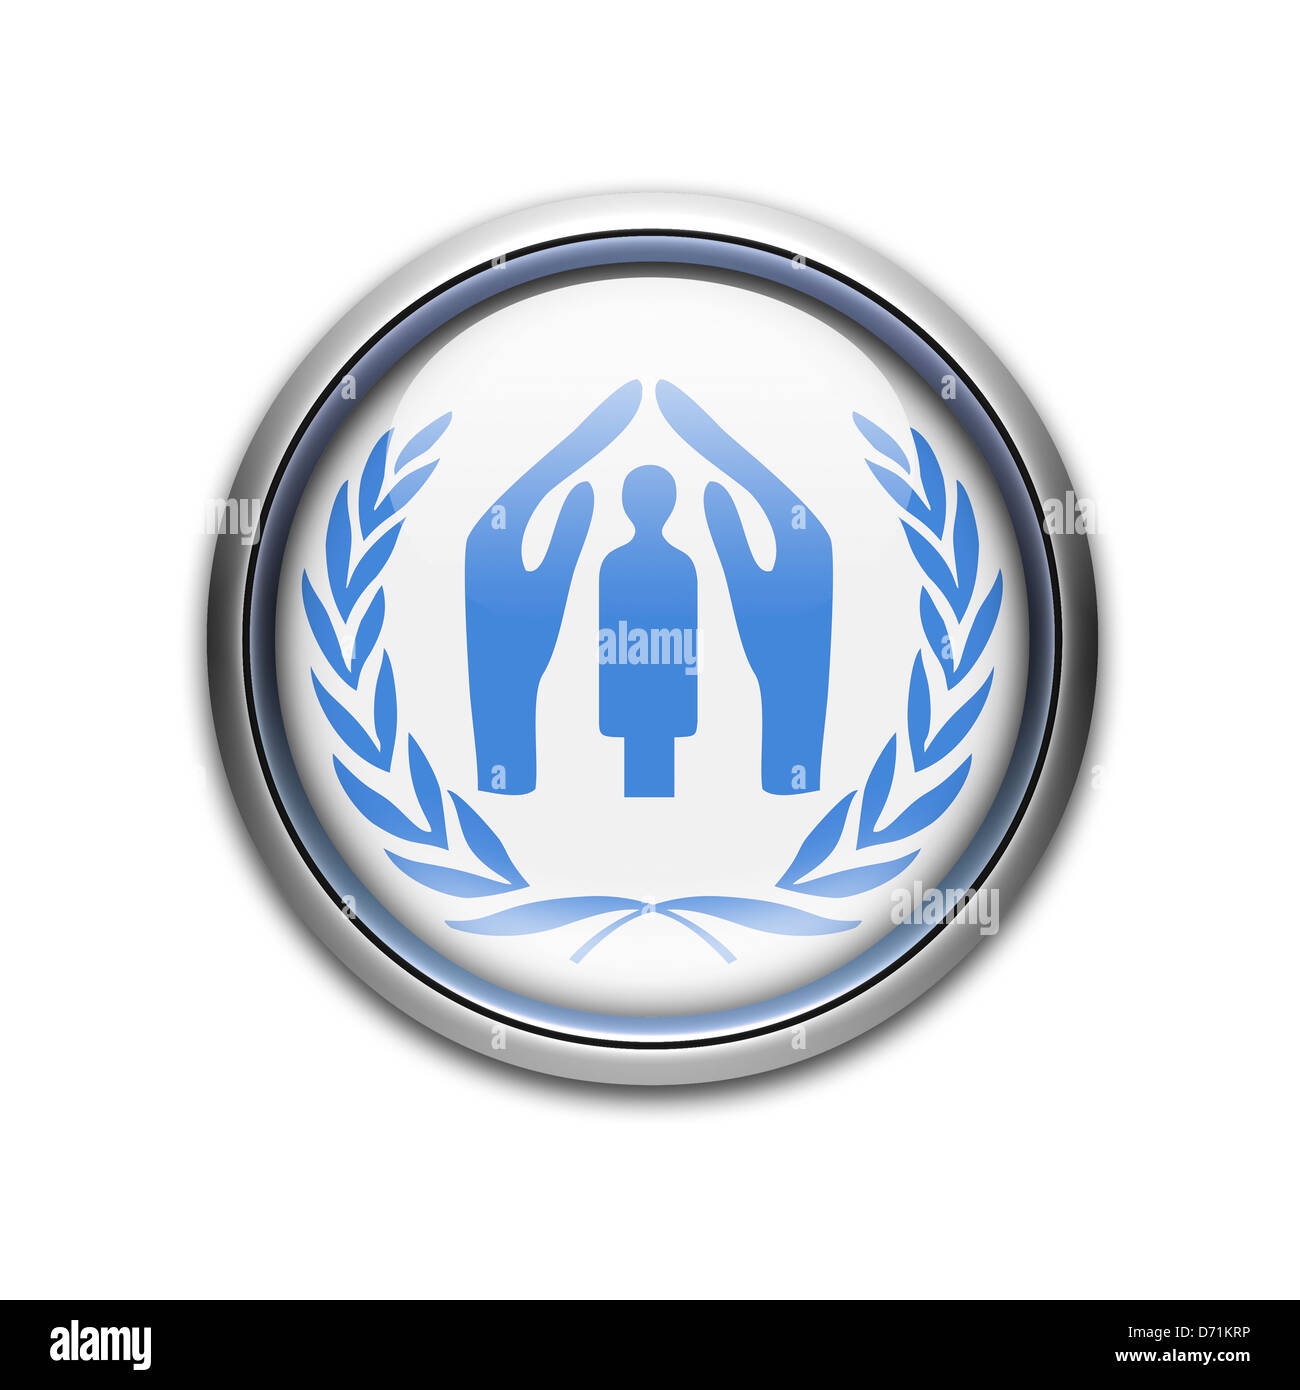 UNHCR / UN Refugee Agency logo symbol icon flag Stock Photo